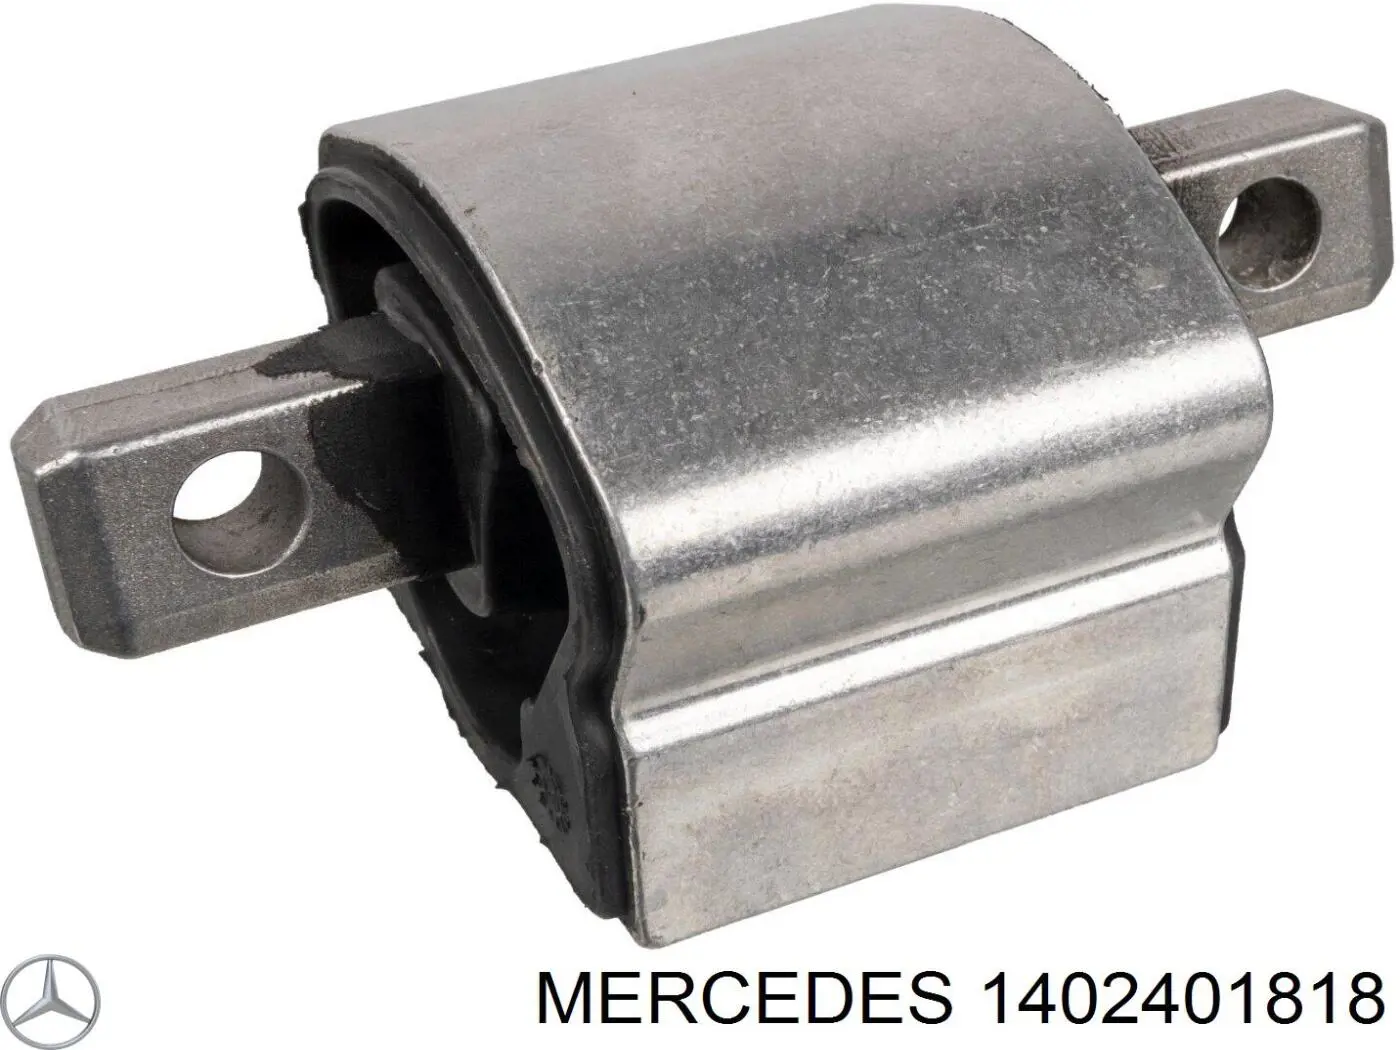 1402401818 Mercedes подушка трансмиссии (опора коробки передач)